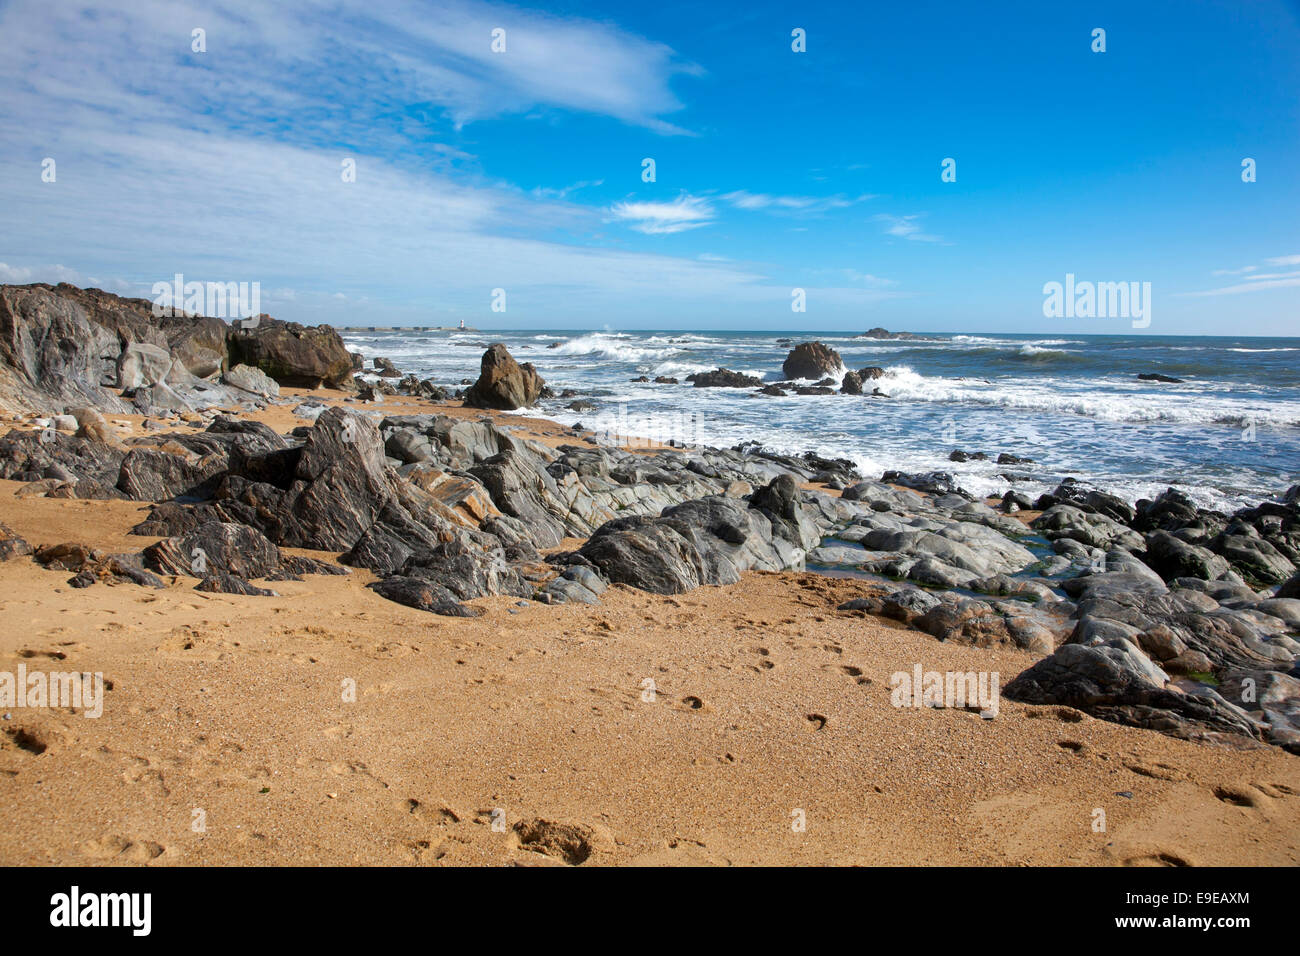 Atlantic Ocean from a beach in Foz area, Porto, Portugal Stock Photo